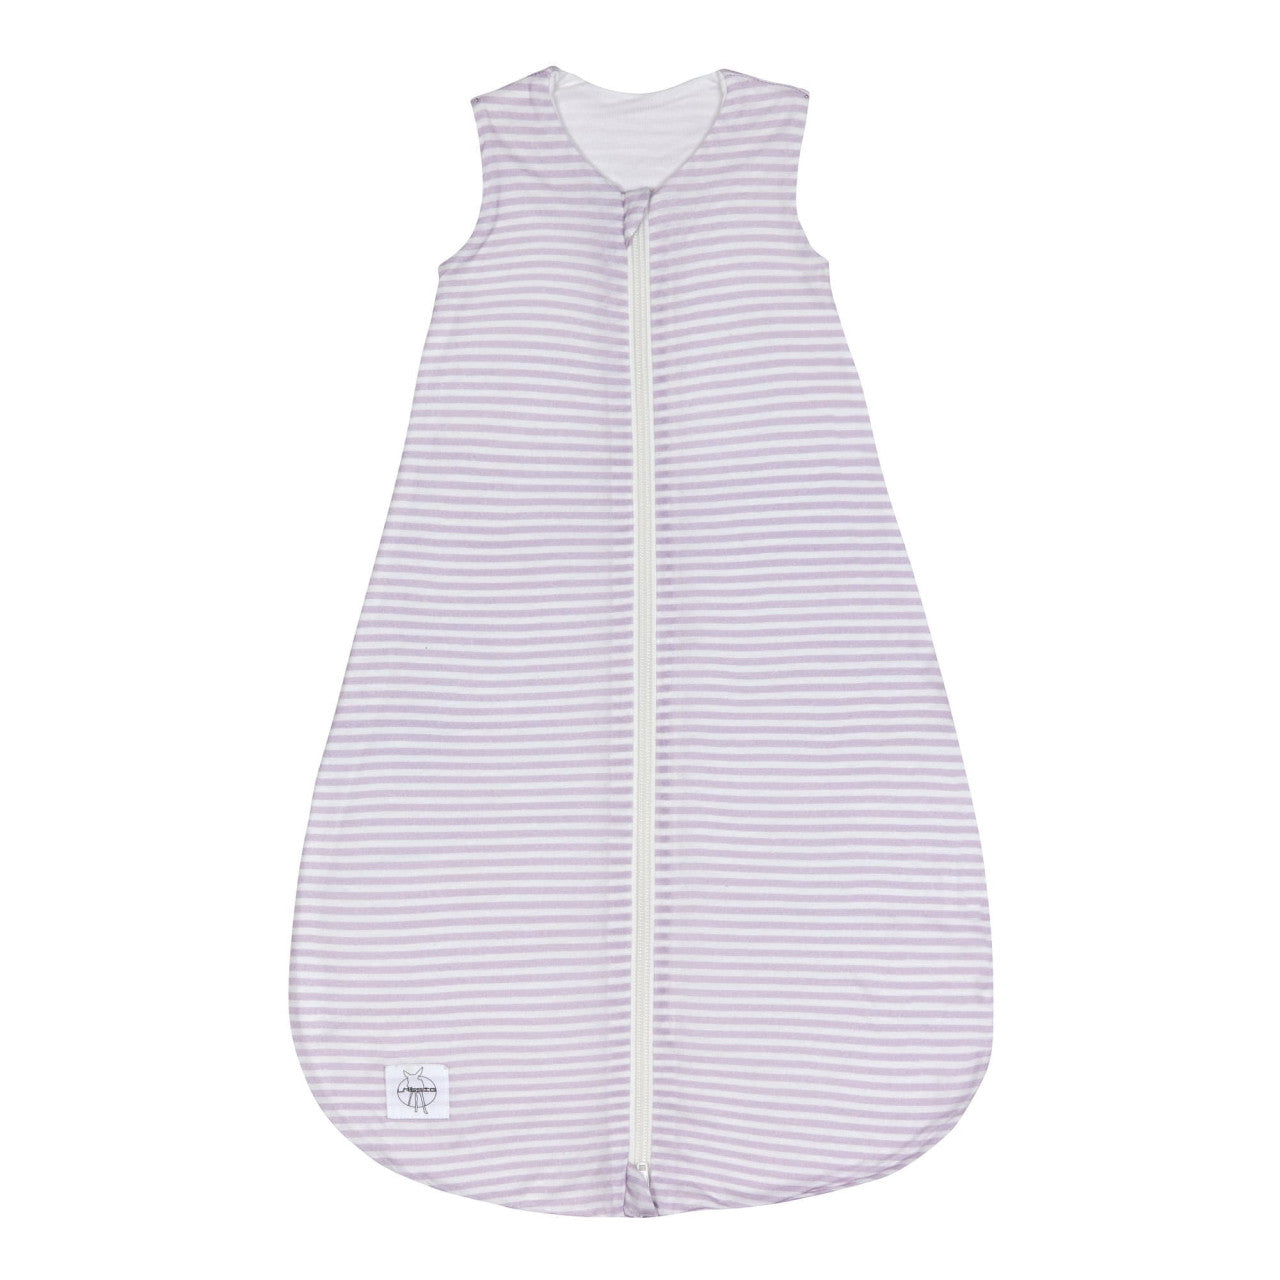 Der lila Baby Schlafsack ist mit einem TOG-Wert von 0.5 ideal für den Sommer.